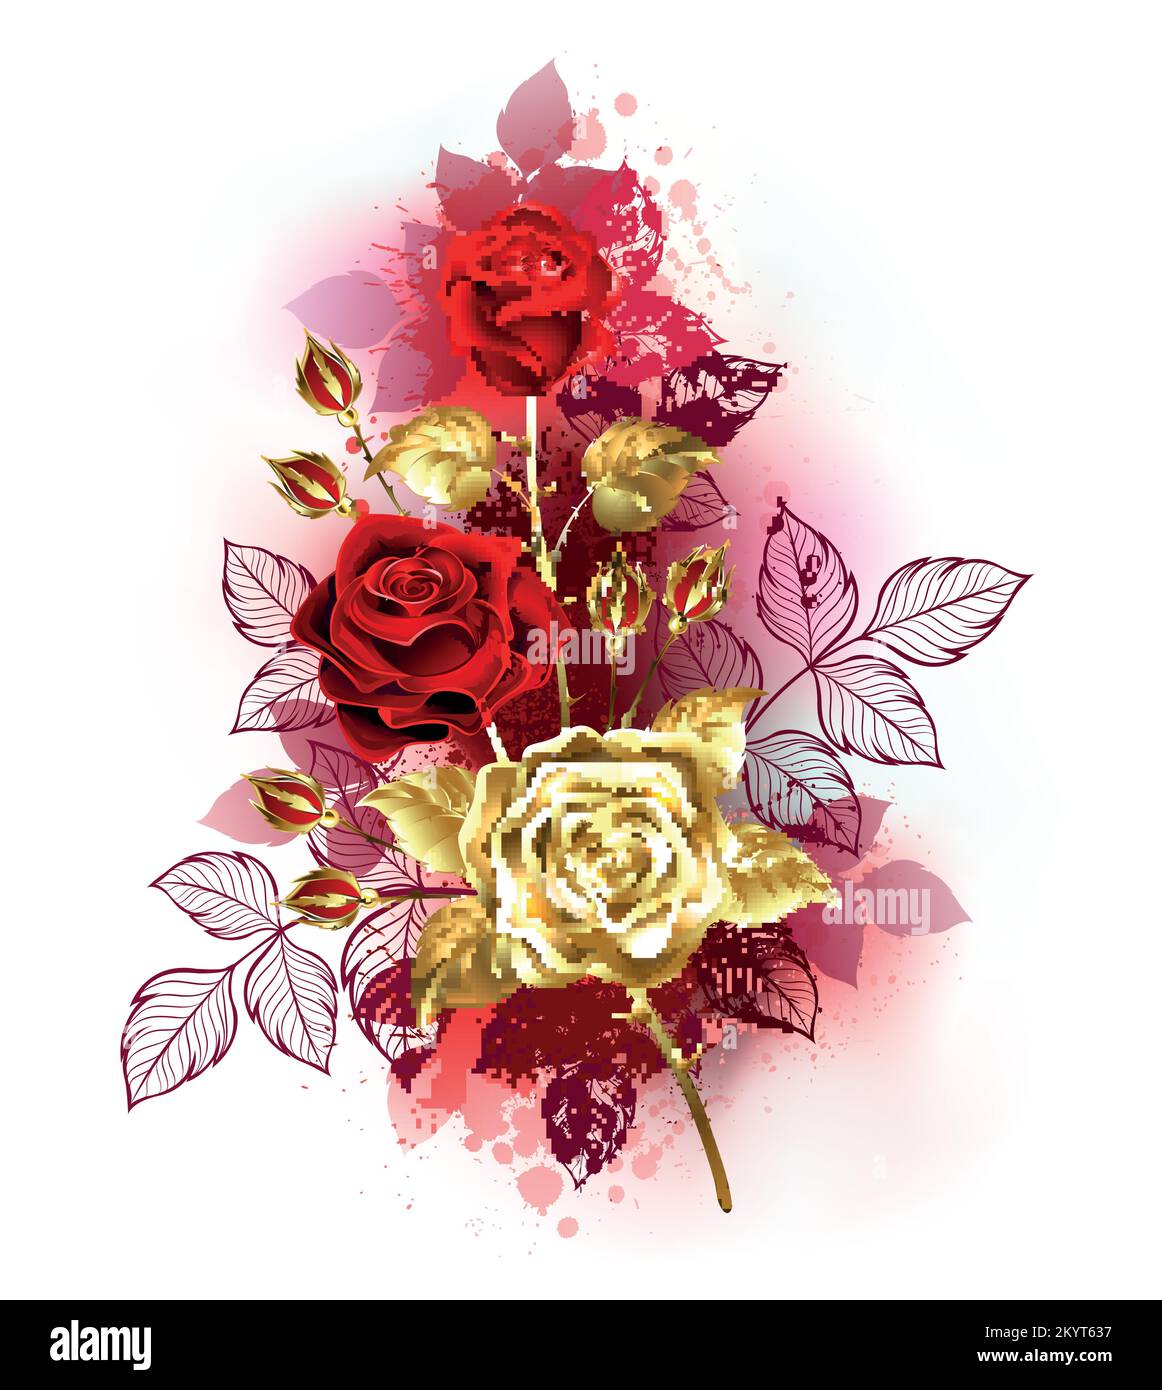 Kleiner Strauß luxuriöser, kunstvoll gestrichener Gold- und roter Rosen mit goldenen und roten Blättern auf weißem Hintergrund. Goldene Rose. Stock Vektor